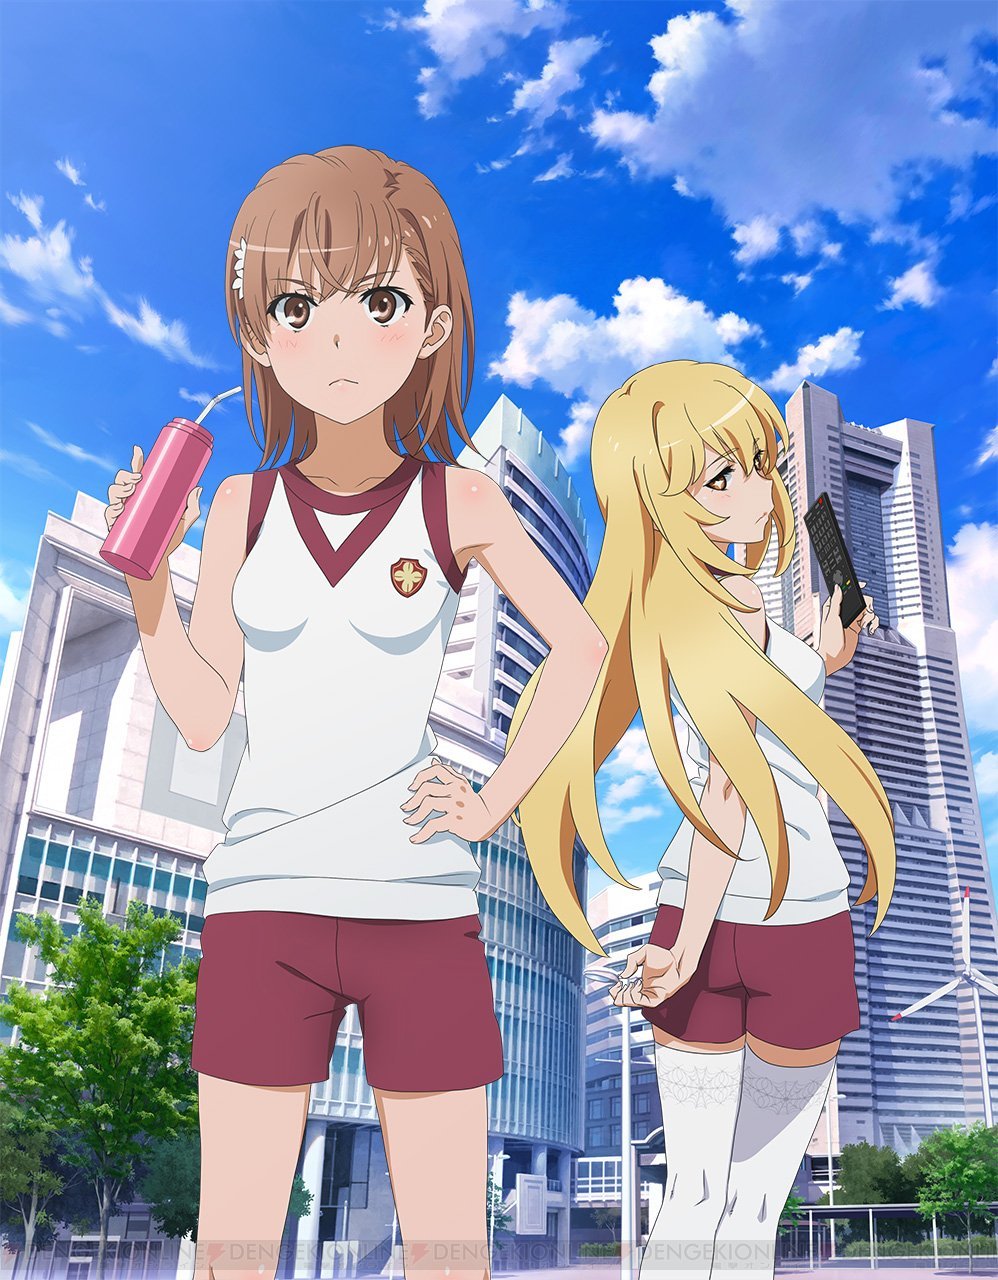 âToaru Kagaku no Railgunâ S3 anime has also been announced. It will be directed by Tatsuyuki Nagai at J.C.STAFF.